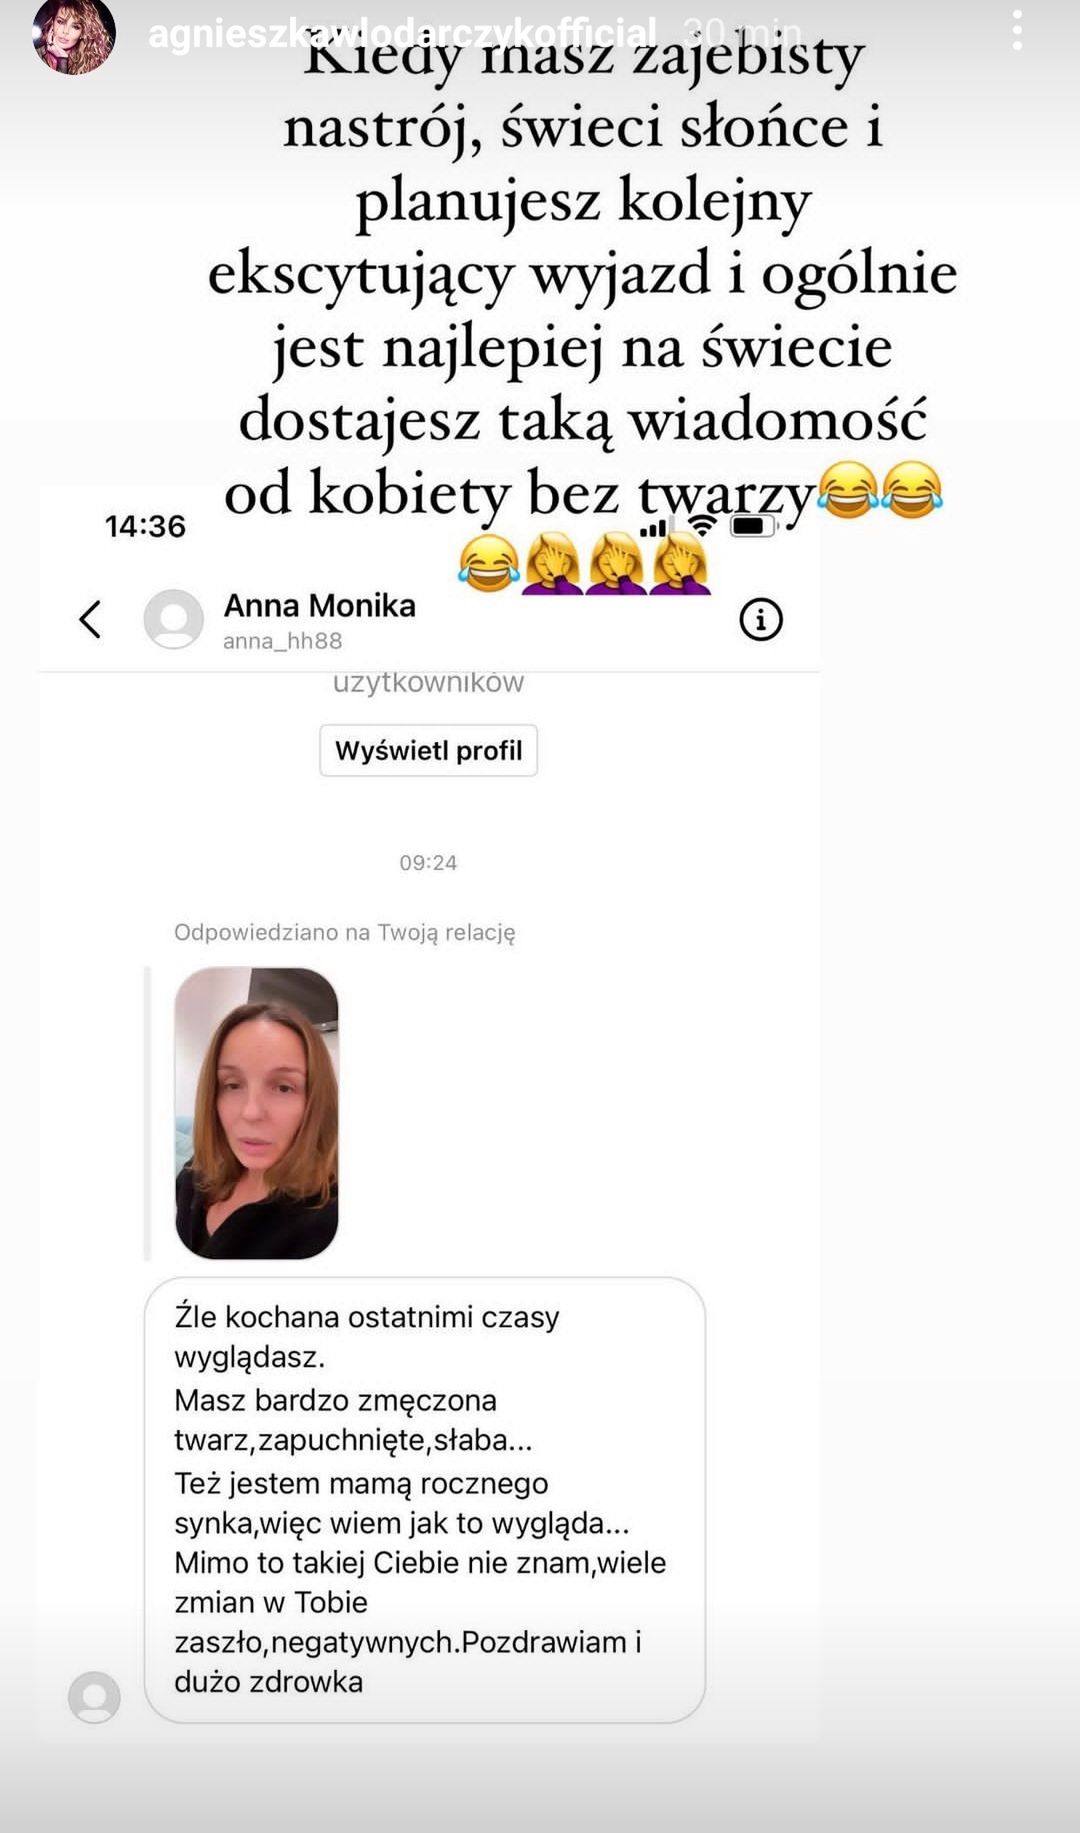 Agnieszka Włodarczyk odpowiedziała internautce